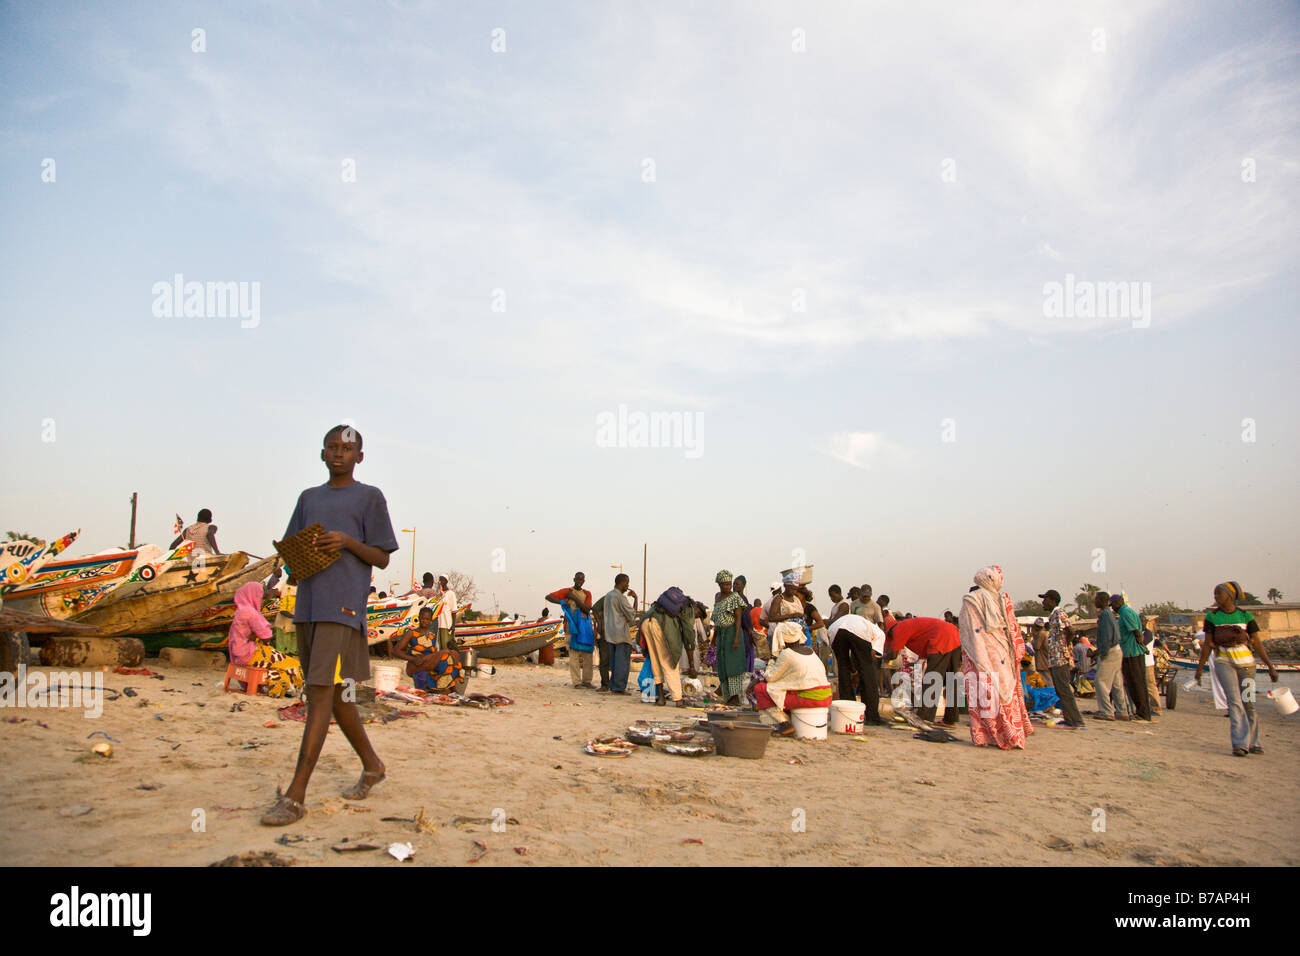 Ce marché aux poissons sur la plage de la capitale du Sénégal ville de Dakar est une scène typique dans ce pays d'Afrique de l'Ouest côtière. Banque D'Images